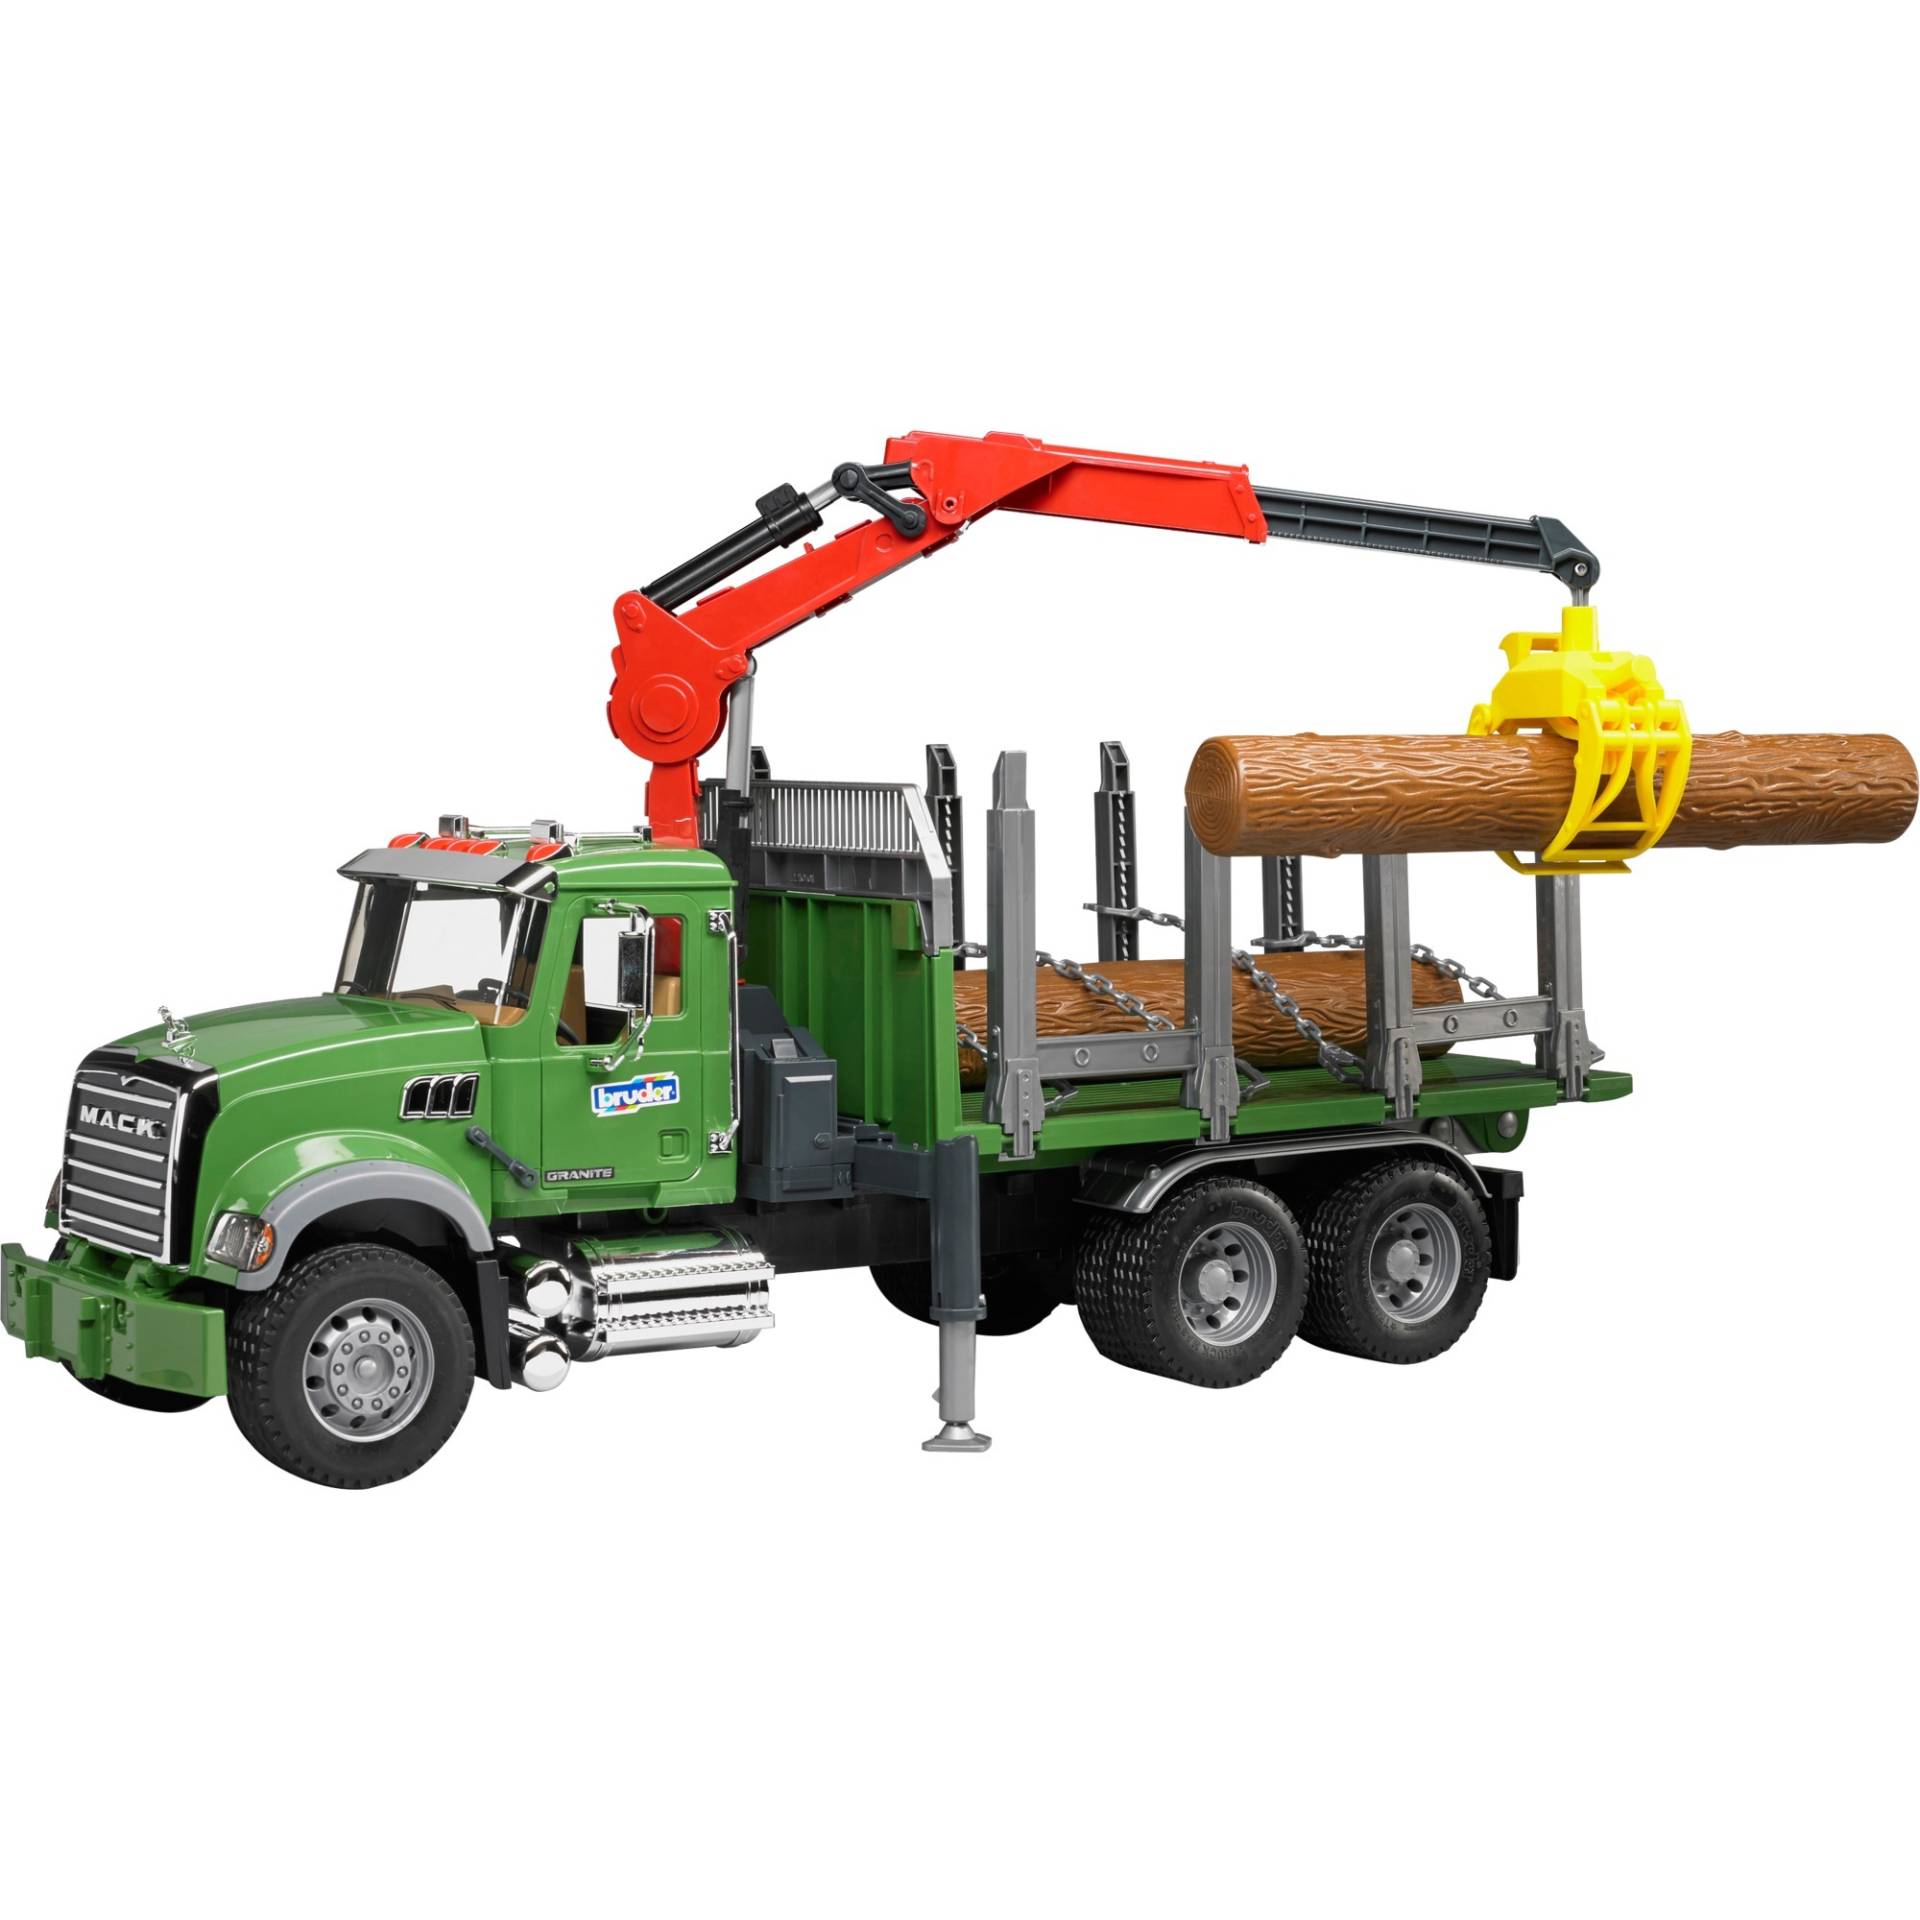 MACK Granite Holztransport-LKW, Modellfahrzeug von Bruder